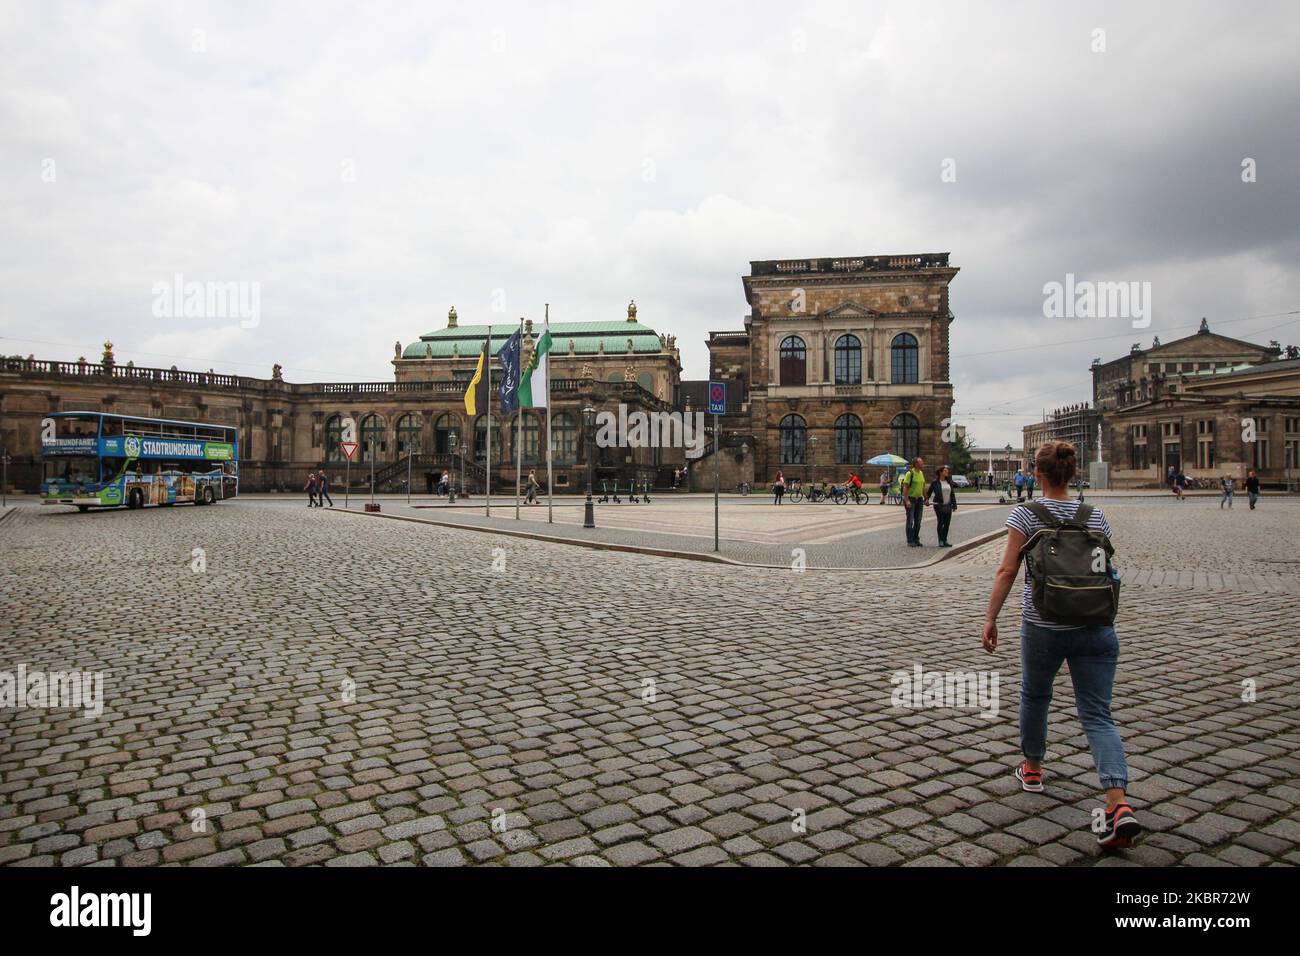 Quasi vuoto a causa della mancanza di turismo correlata al Covid-19, la strada della città vecchia è vista a Dresda, Germania il 11 giugno 2020 (Foto di Michal Fludra/NurPhoto) Foto Stock